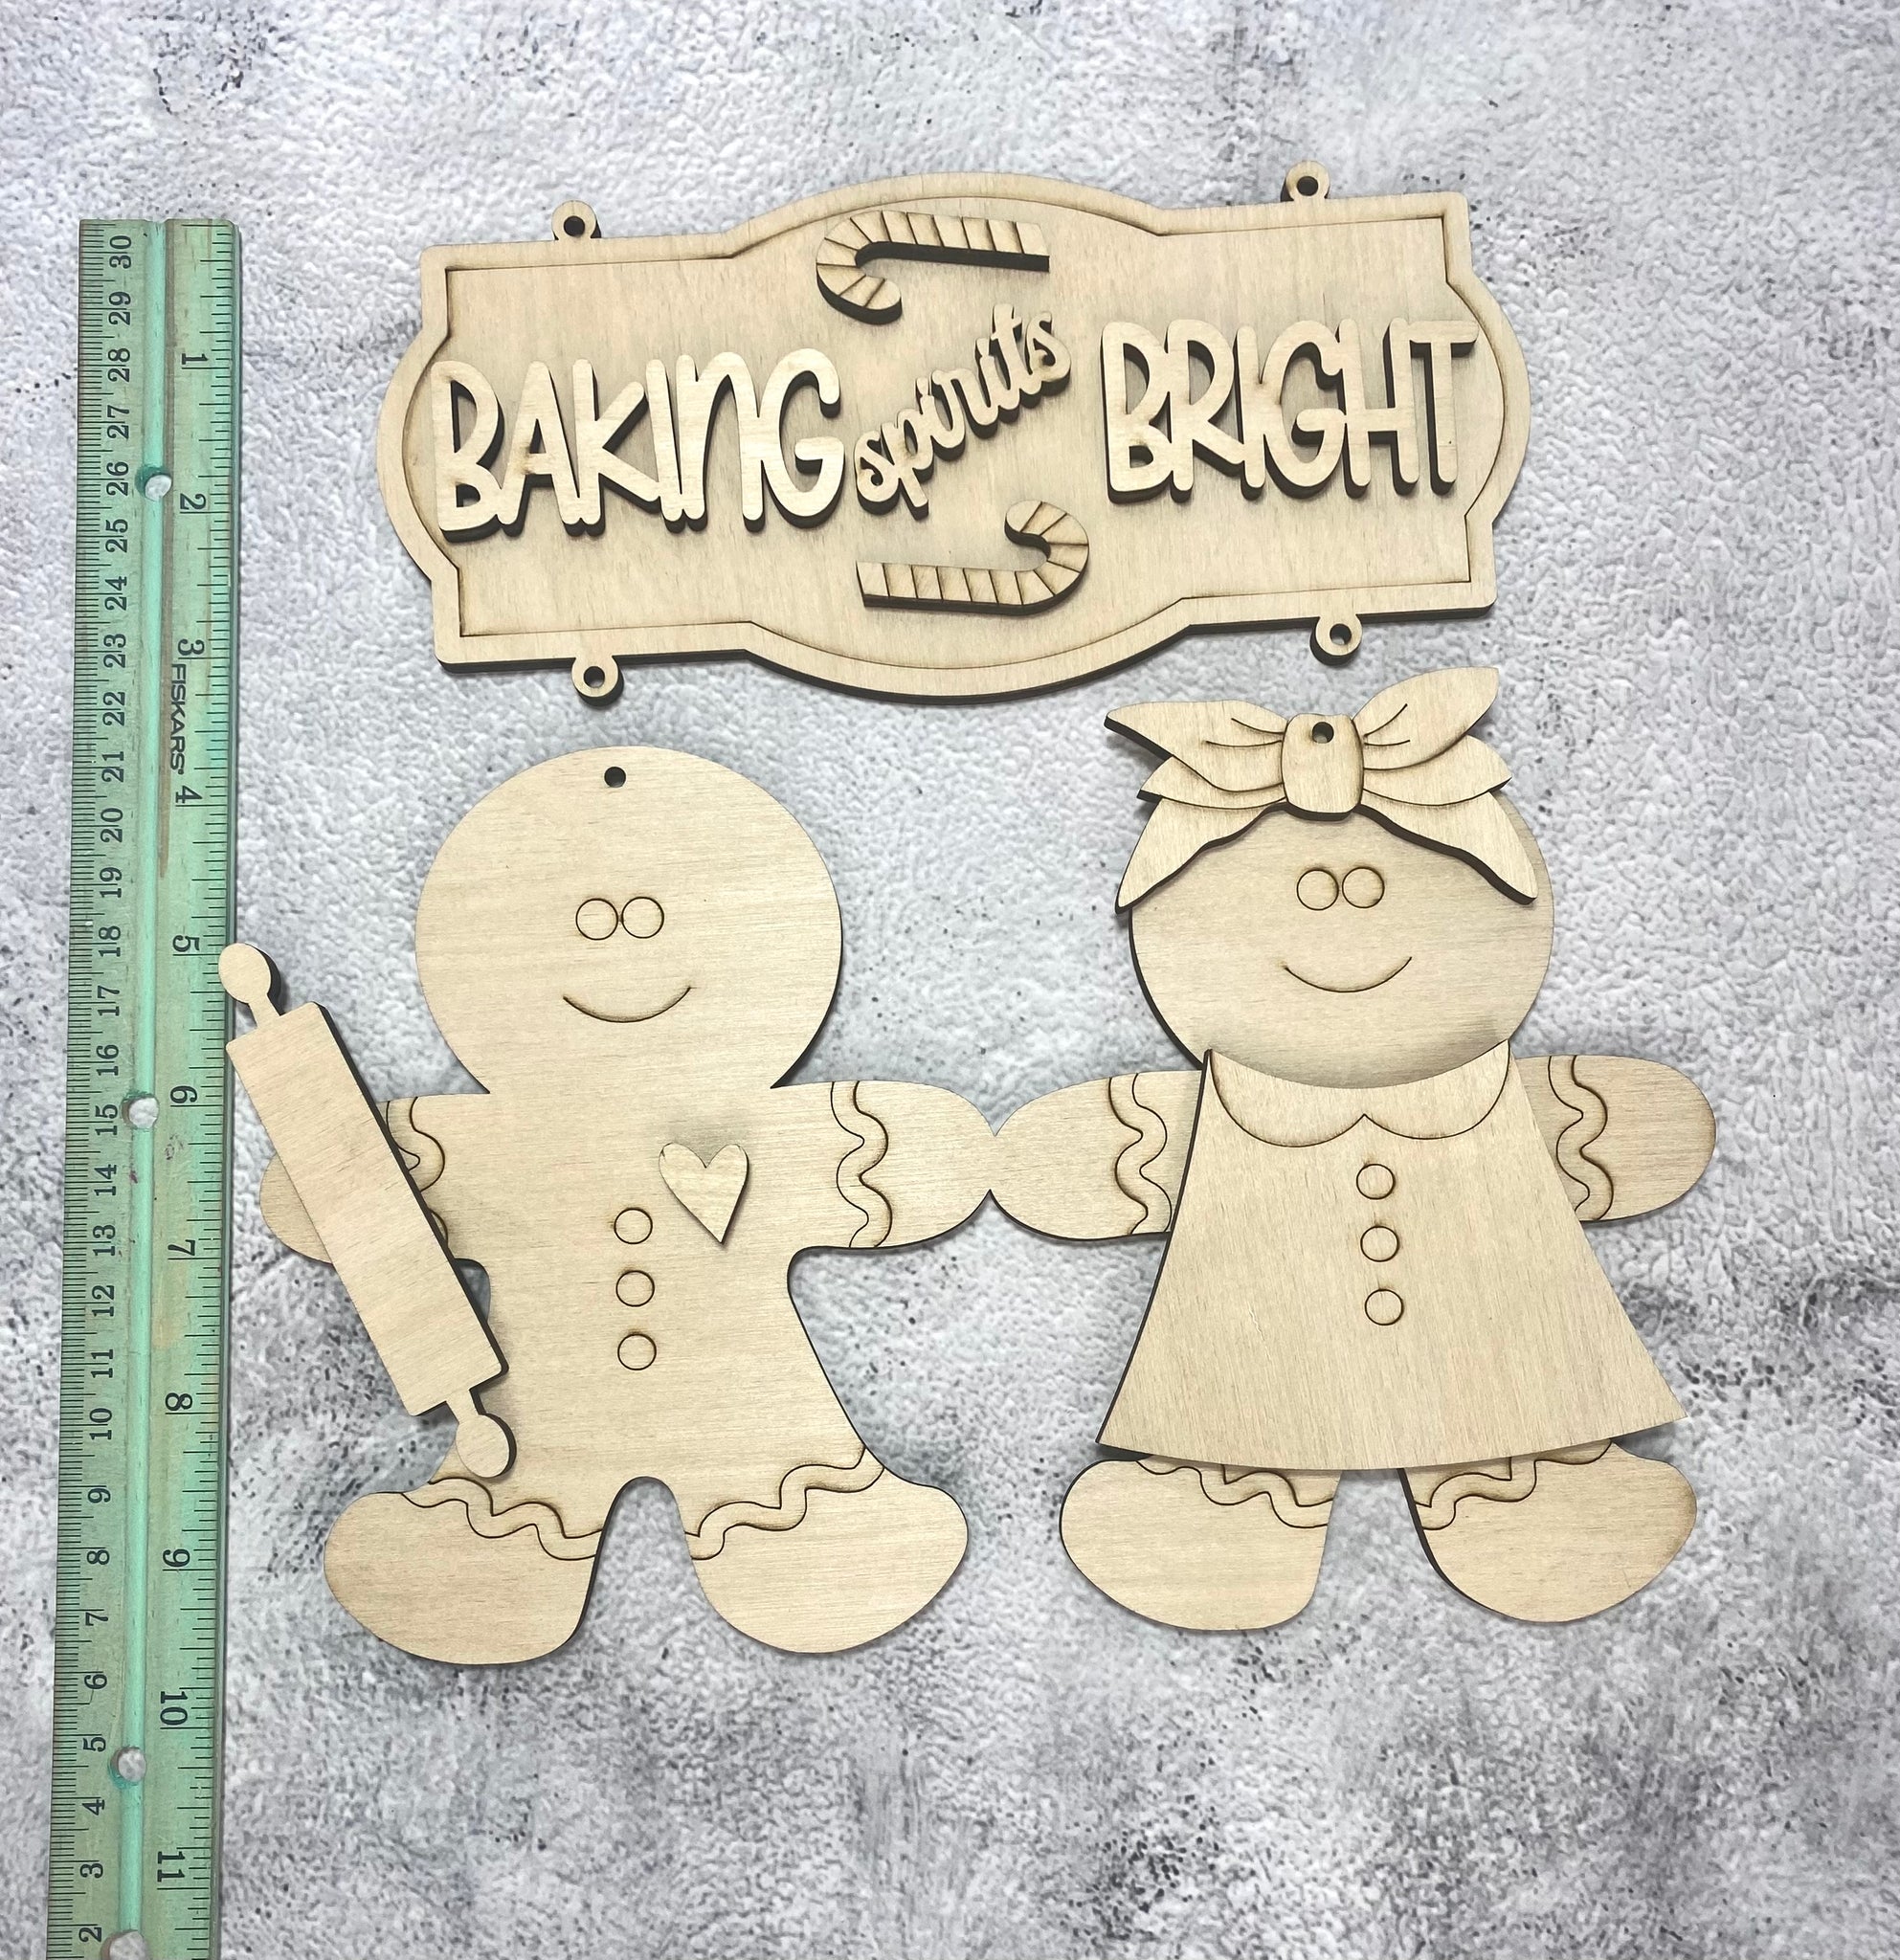 Baking spirits bright hanging sign DIY set